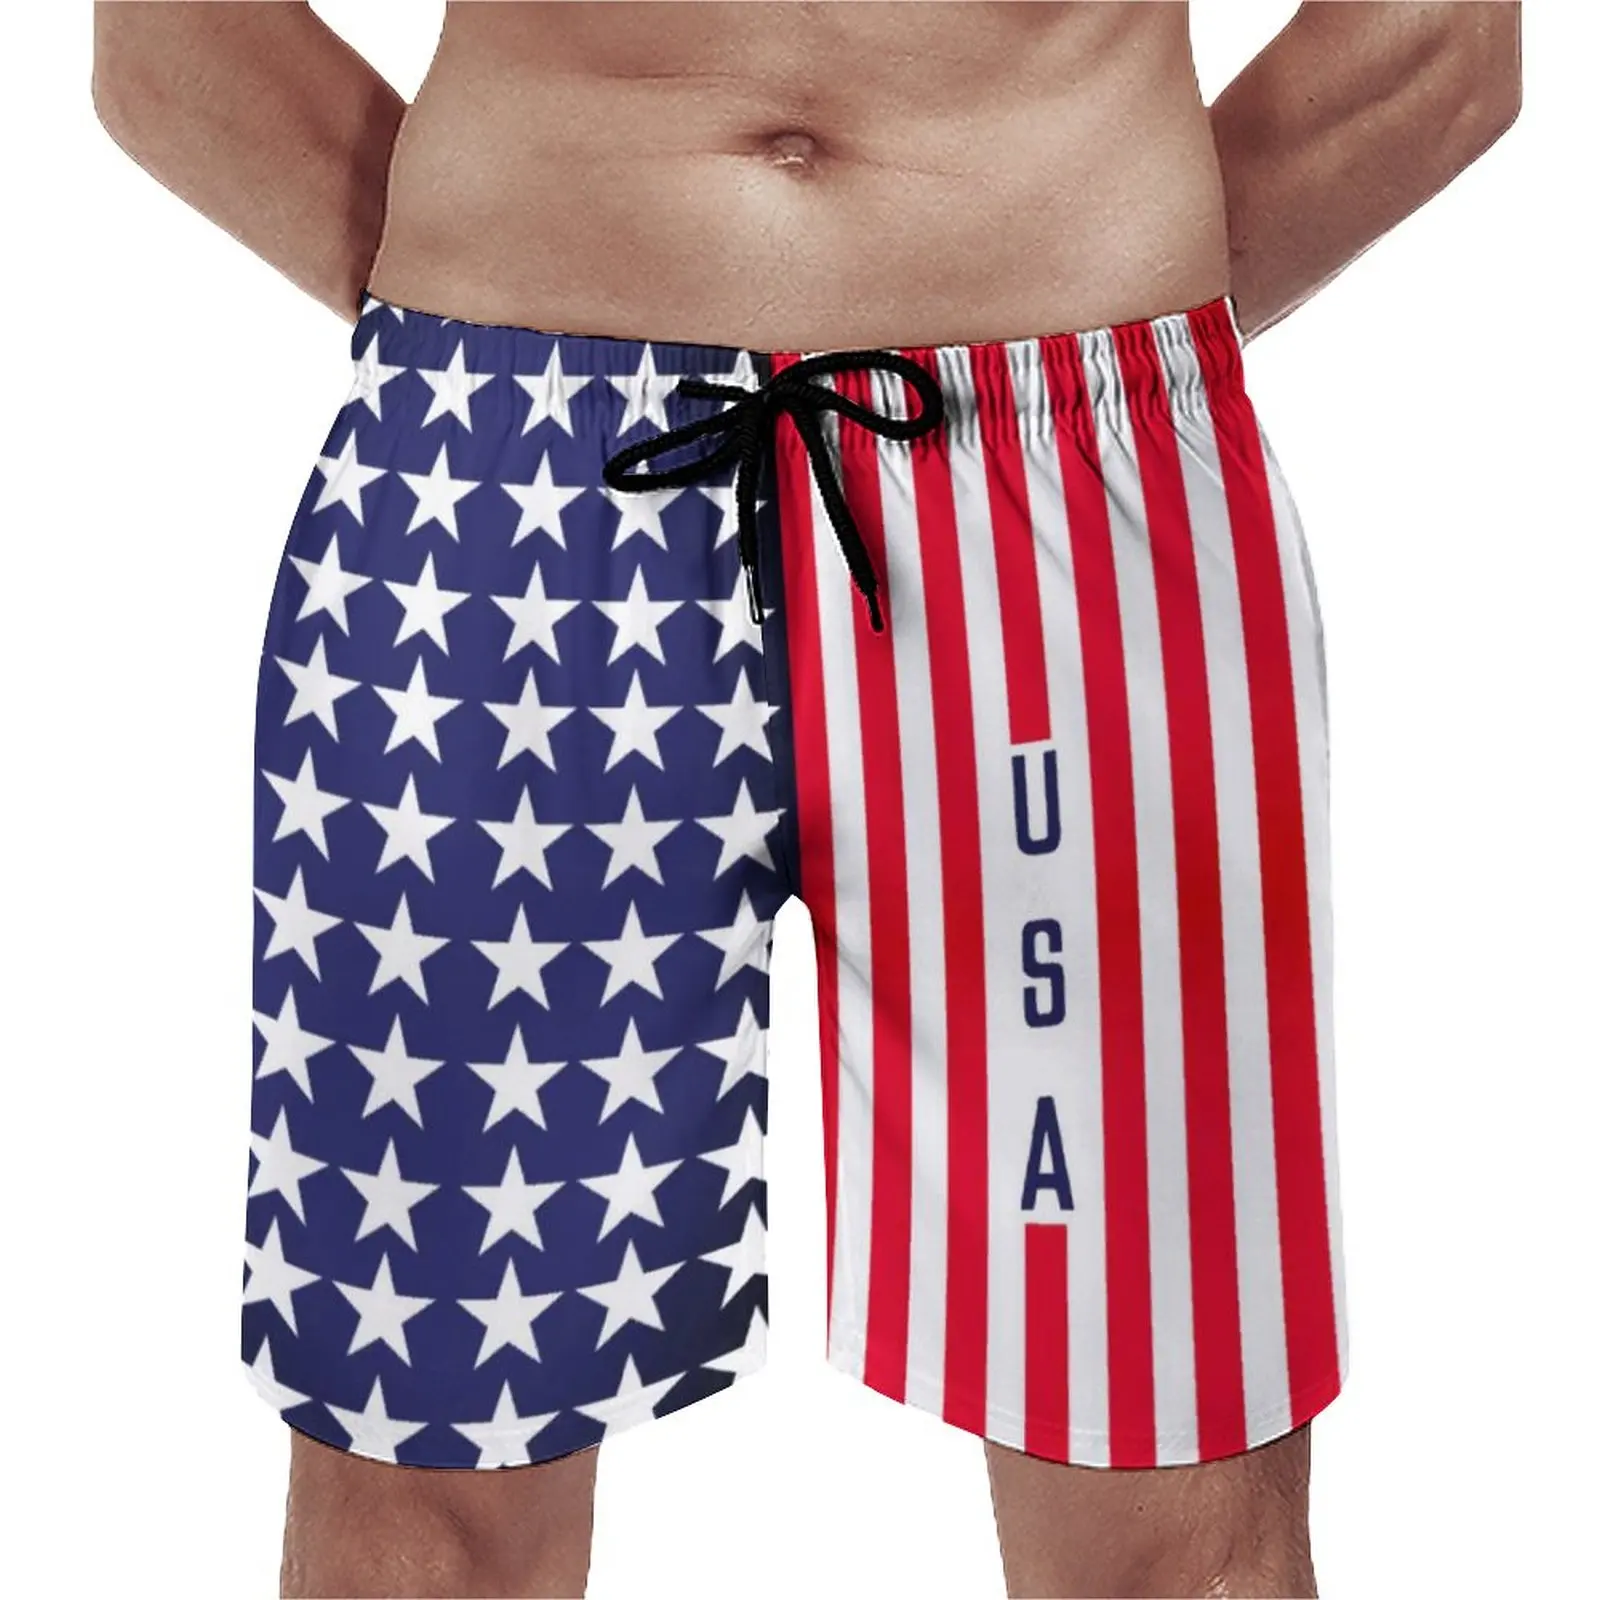 

Шорты для спортзала с американским флагом США, патриотические спортивные короткие штаны в полоску с современными звездочками для серфинга и пляжа, быстросохнущие забавные пляжные трусы большого размера